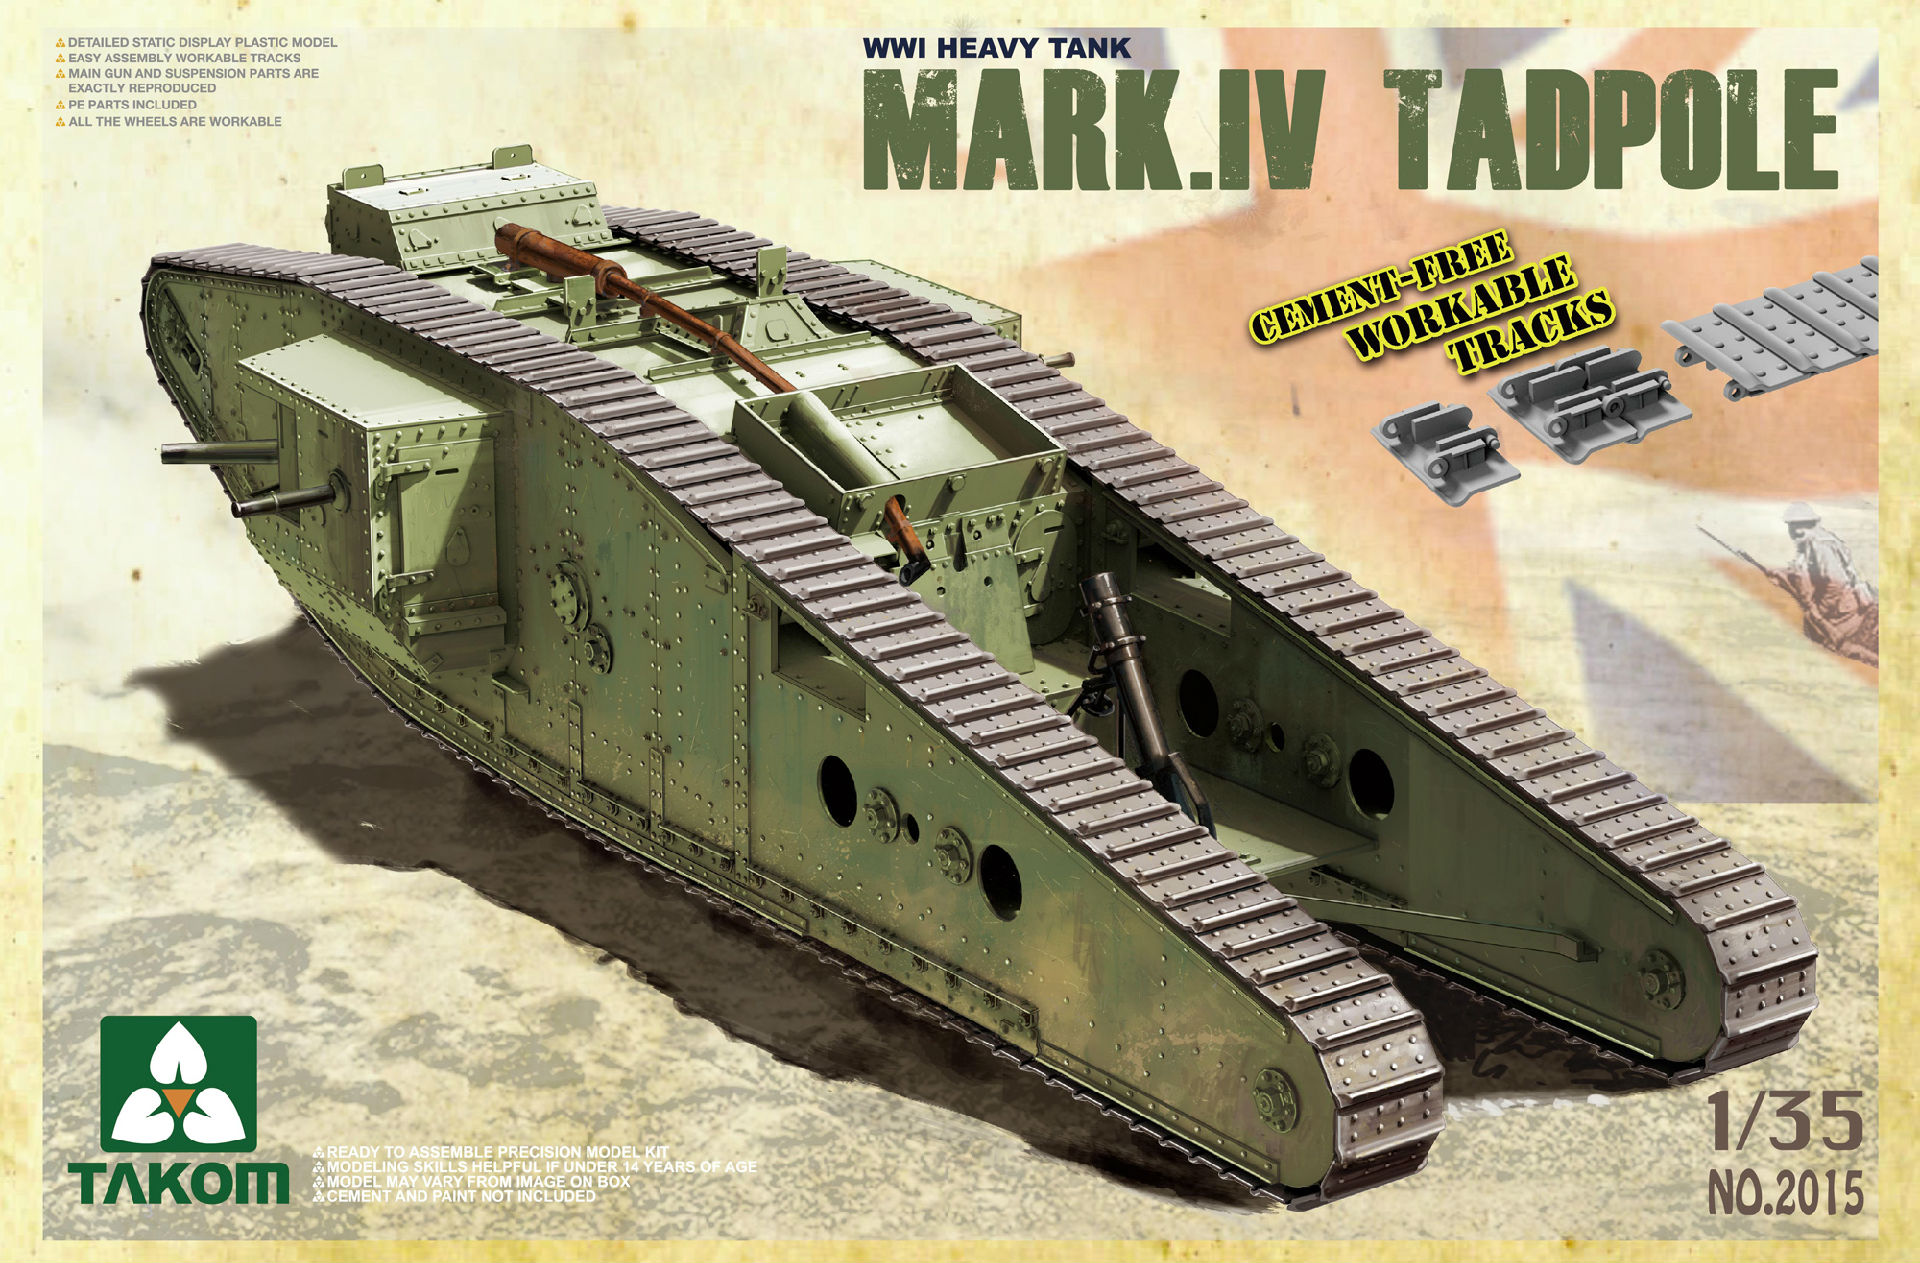 WWI Heavy Battle Tank Mark IV Male Tadpole w/Rear mortar